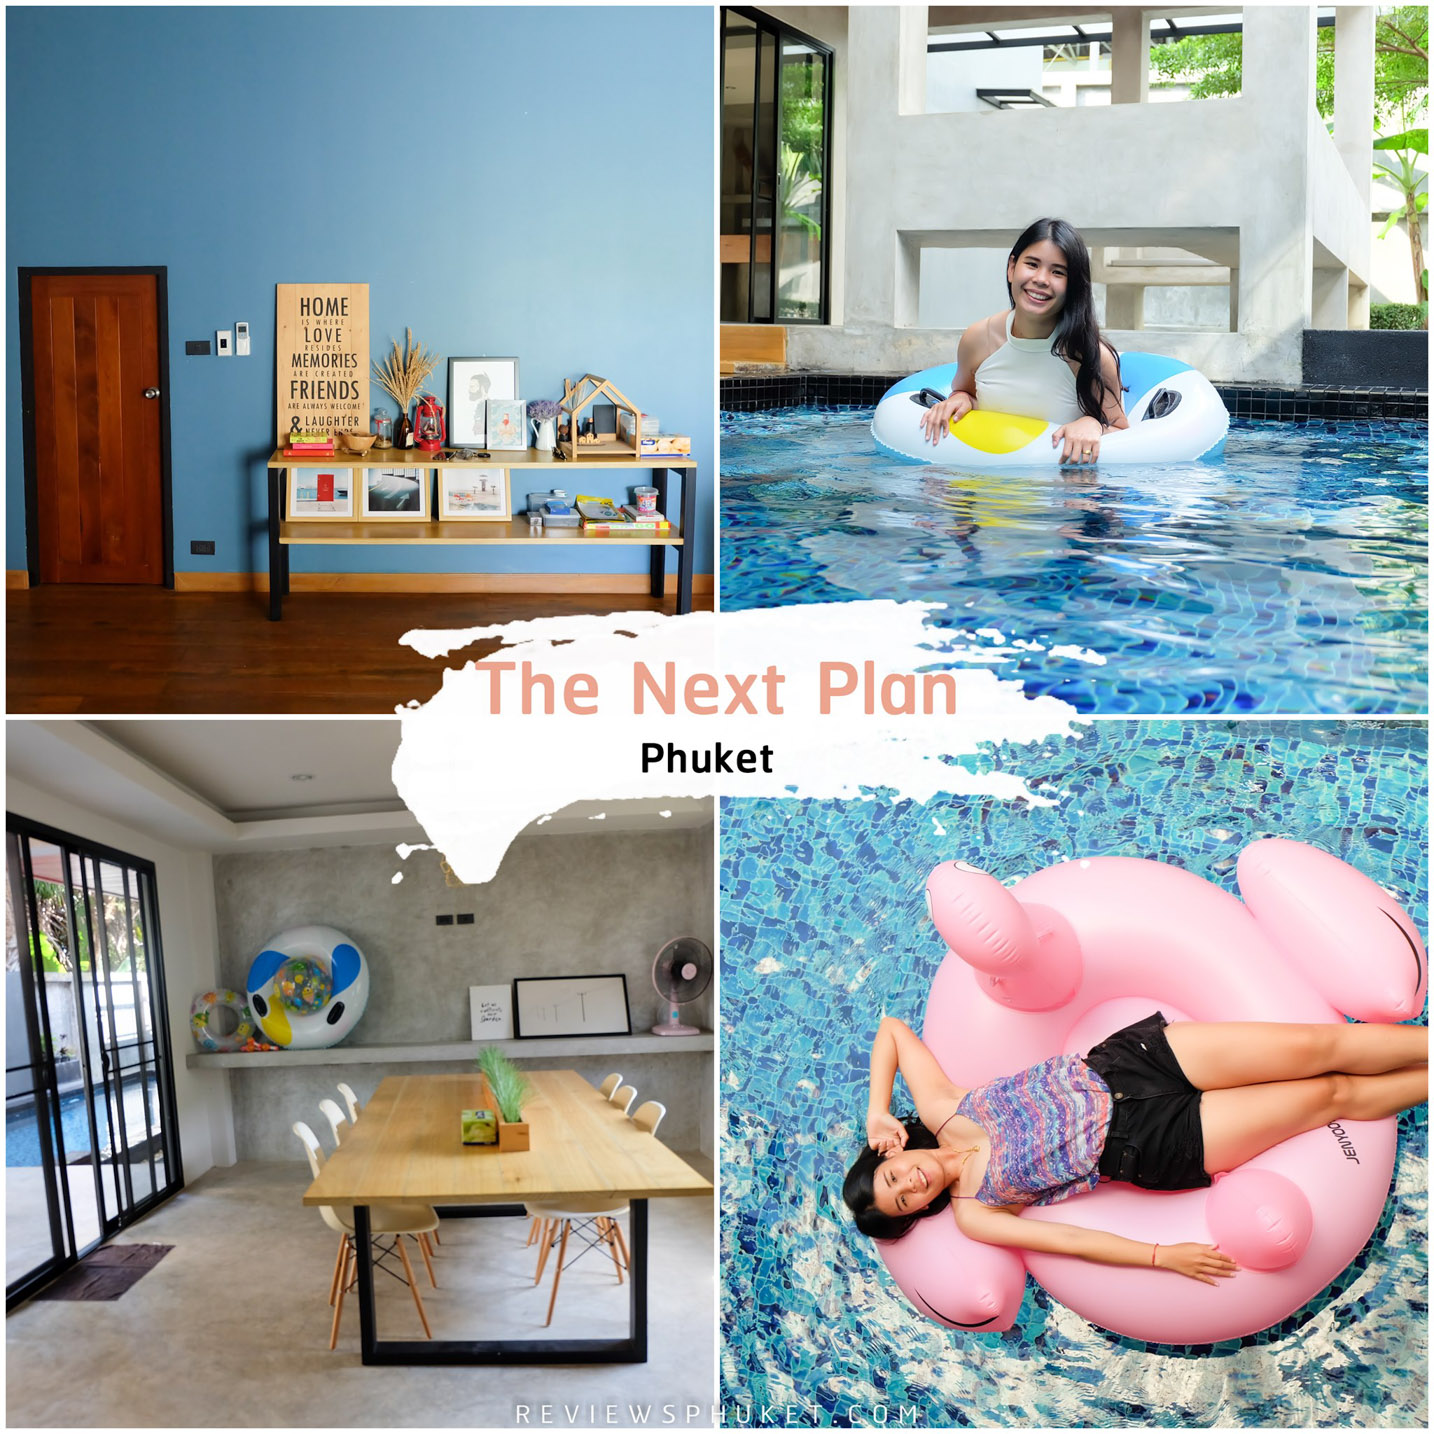 The-Next-Plan-Phuket -ที่พักน่ารักสไตล์มินิมอล-จะมากับเพื่อน-กับแฟน-กับครอบครัวก็ได้หมดด-ที่พักสไตล์-Loft-ดูเรียบสบายตาง่ายๆ--เป็น-Pool-villa-เนื้อที่ทั้งหมด-500--ตารางเมตร-มีทั้งหมด-3-ห้องนอน--4-ห้องน้ำ--ห้องครัว--สระว่ายน้ำ-และห้องนั่งเล่น---กว้างมวากบอกเลยต้องห้ามพลาด ที่พักภูเก็ต,ที่พักหรู,วิวหลักล้าน,ริมทะเล,โรงแรม,รีสอร์ท,Phuket,หาดสวย,น้ำใส